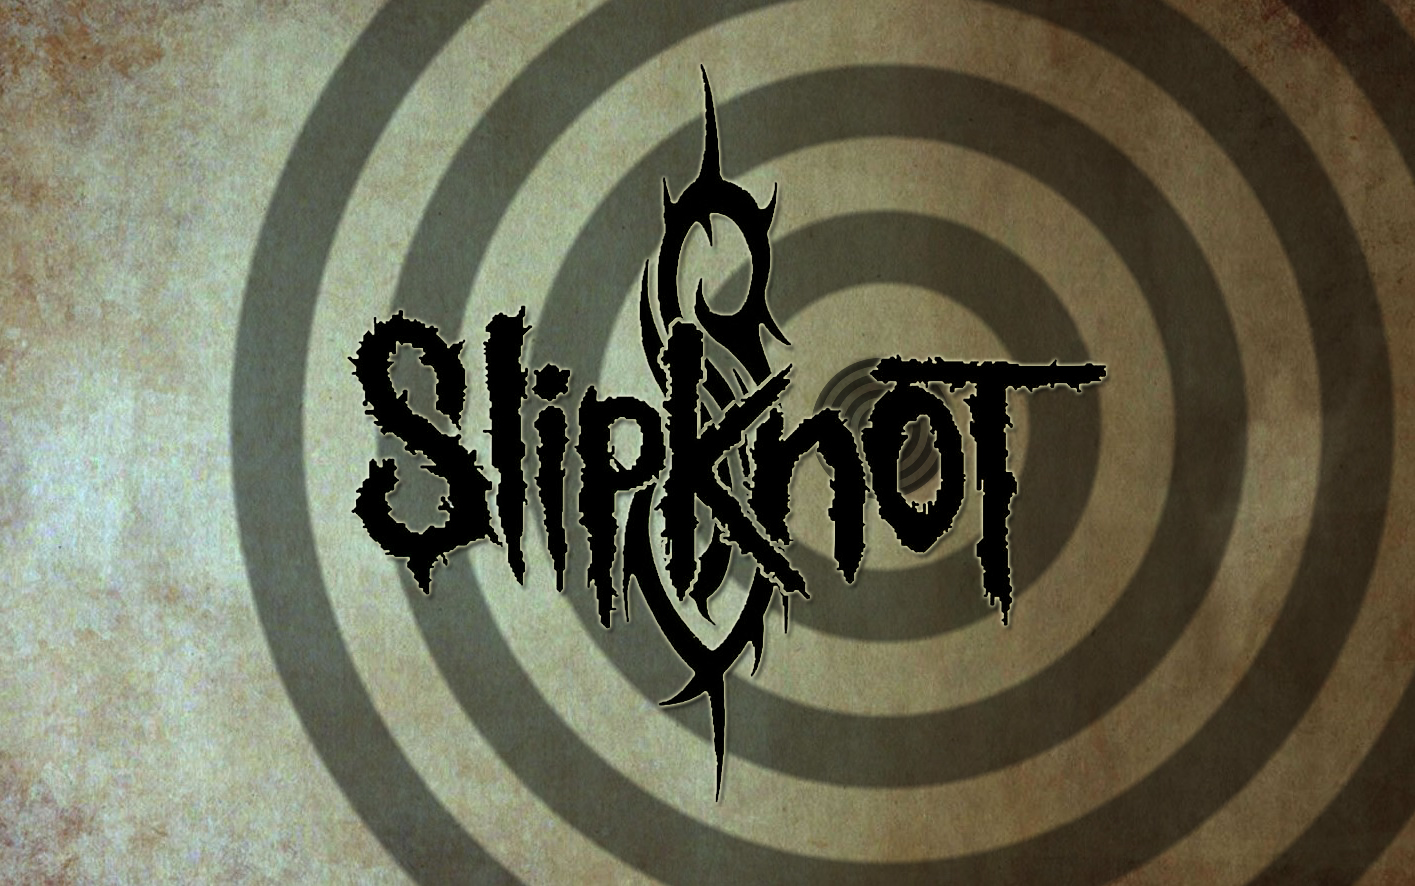 Slipknot Wallpapers HD logo in title